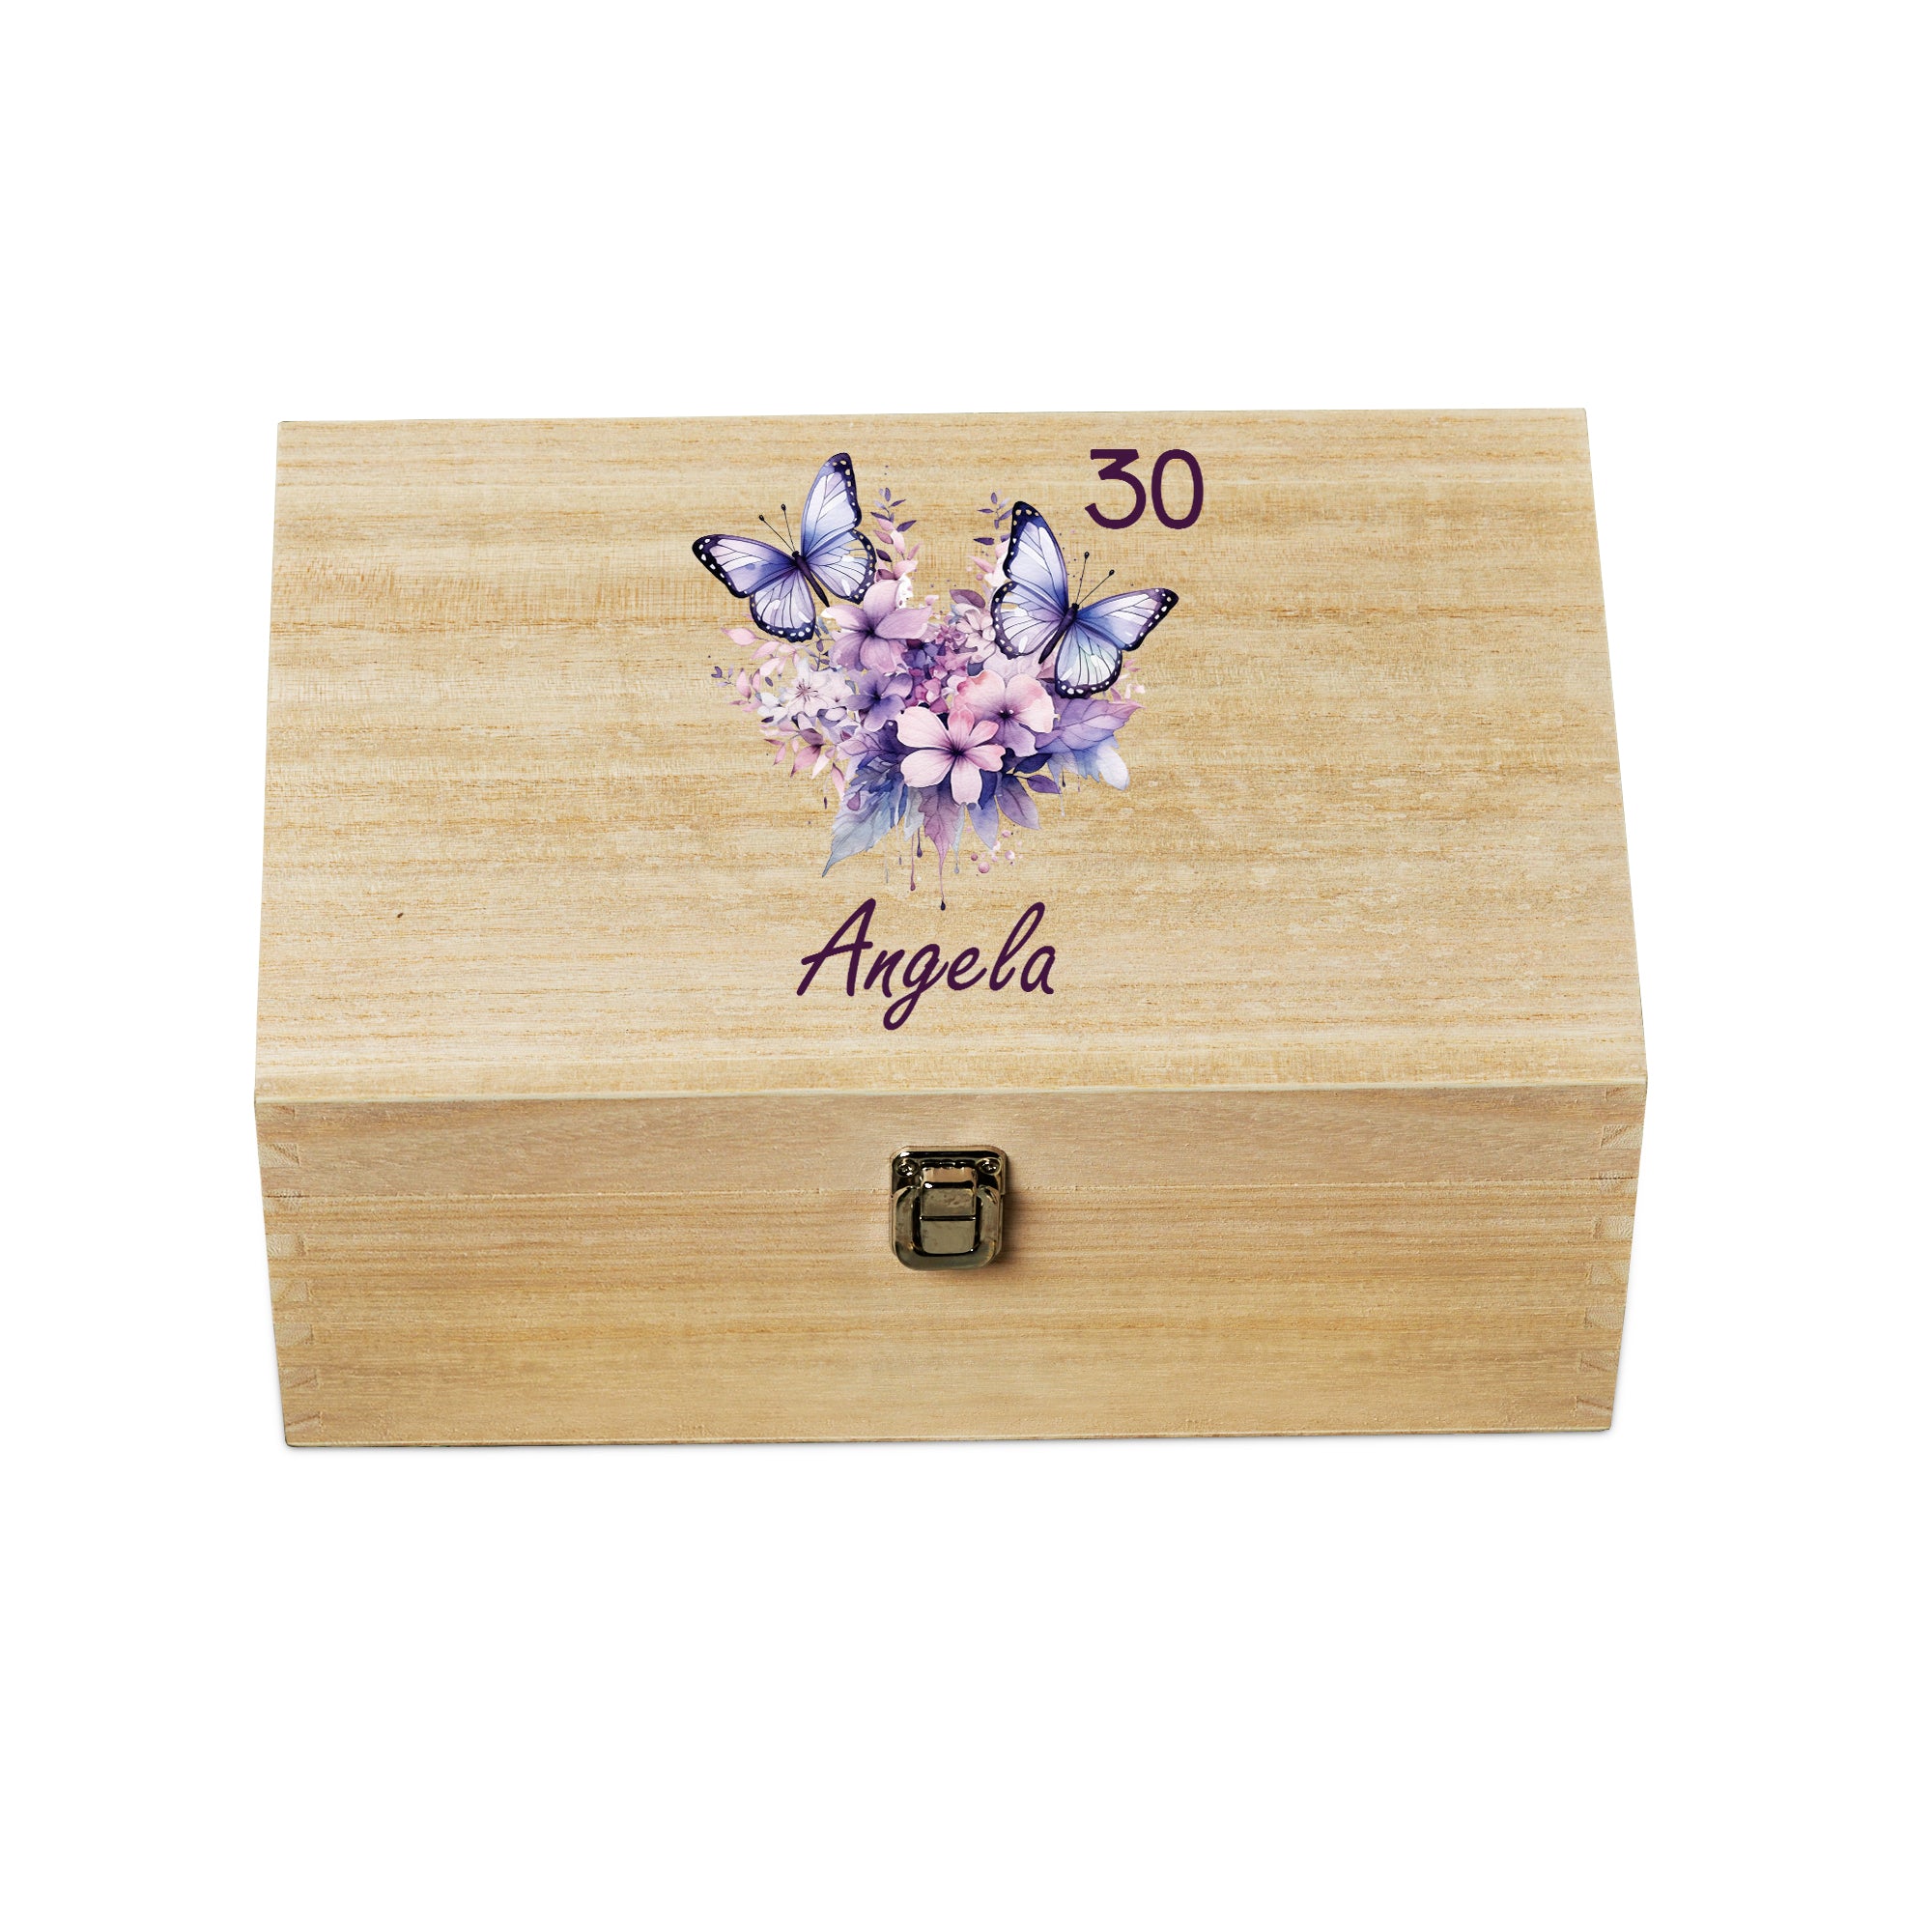 Personalised Large Birthday Wooden Memories Keepsake Box Gift With Butterflies